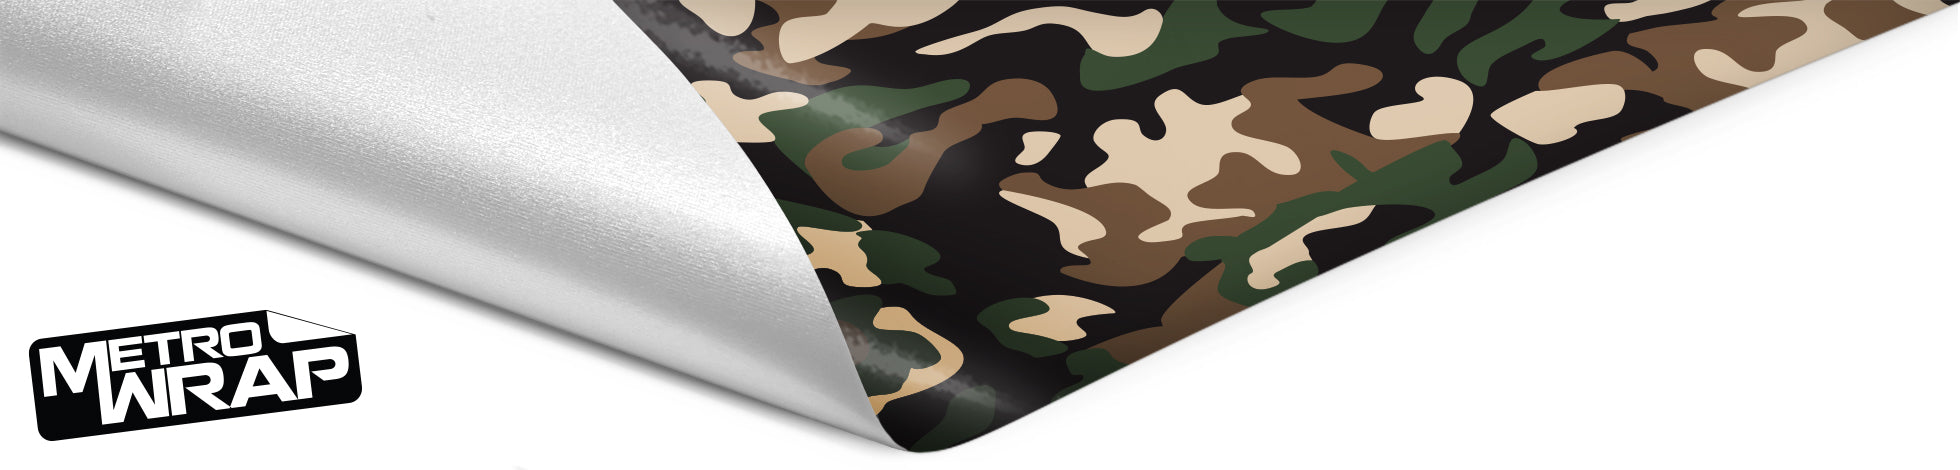 Metro Wrap Camouflage Vinyl Film